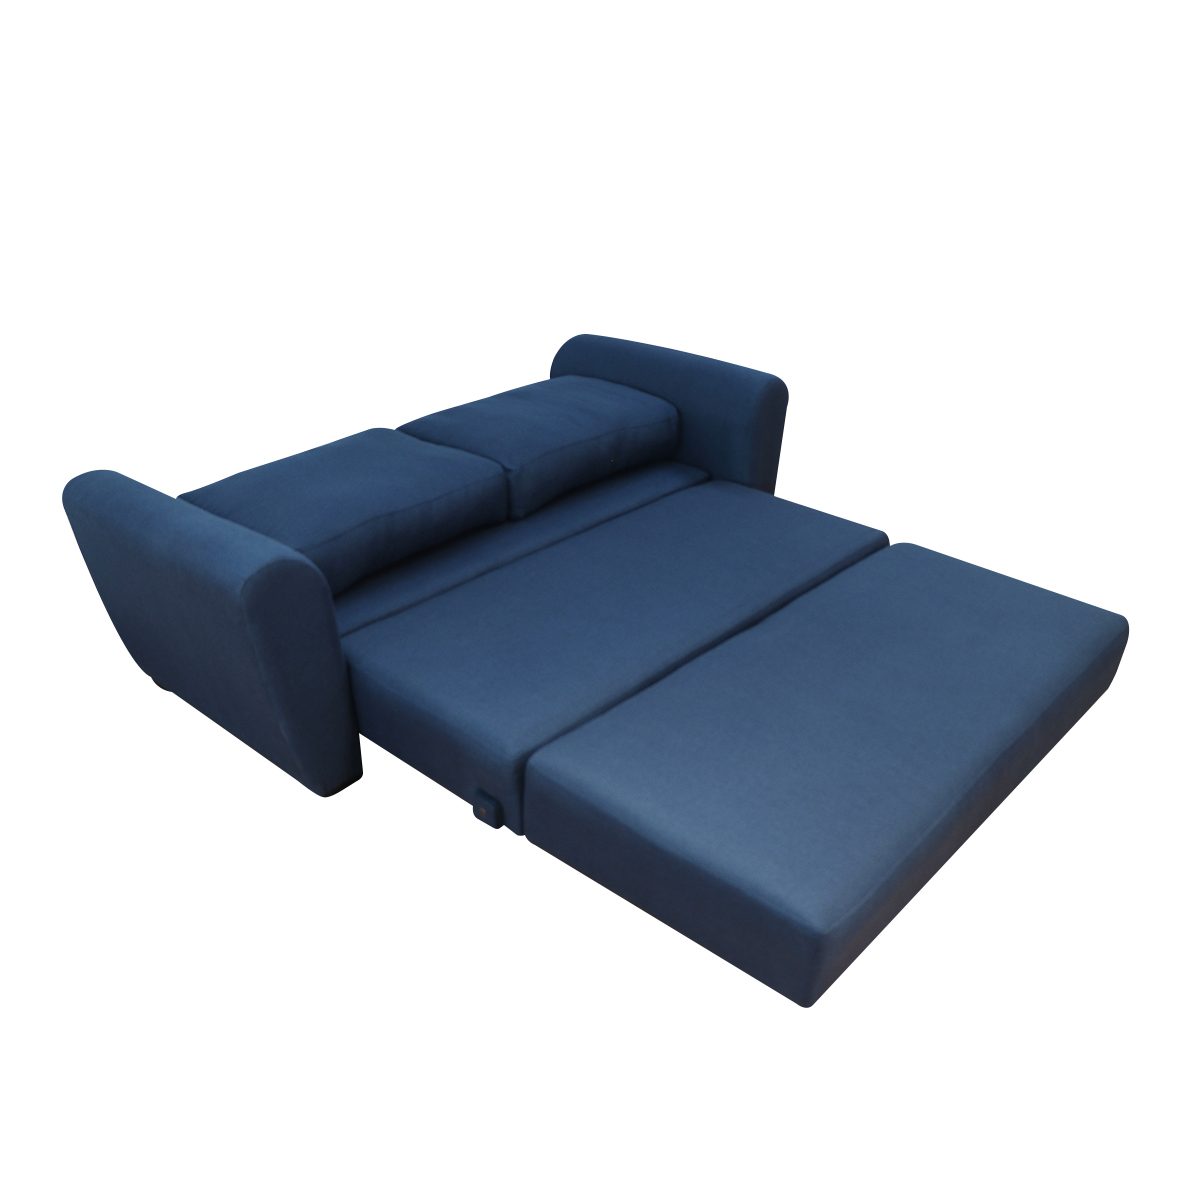 Sofá cama Litto individual - Mobydec Muebles  Venta de muebles en línea  salas, sillones, mesas